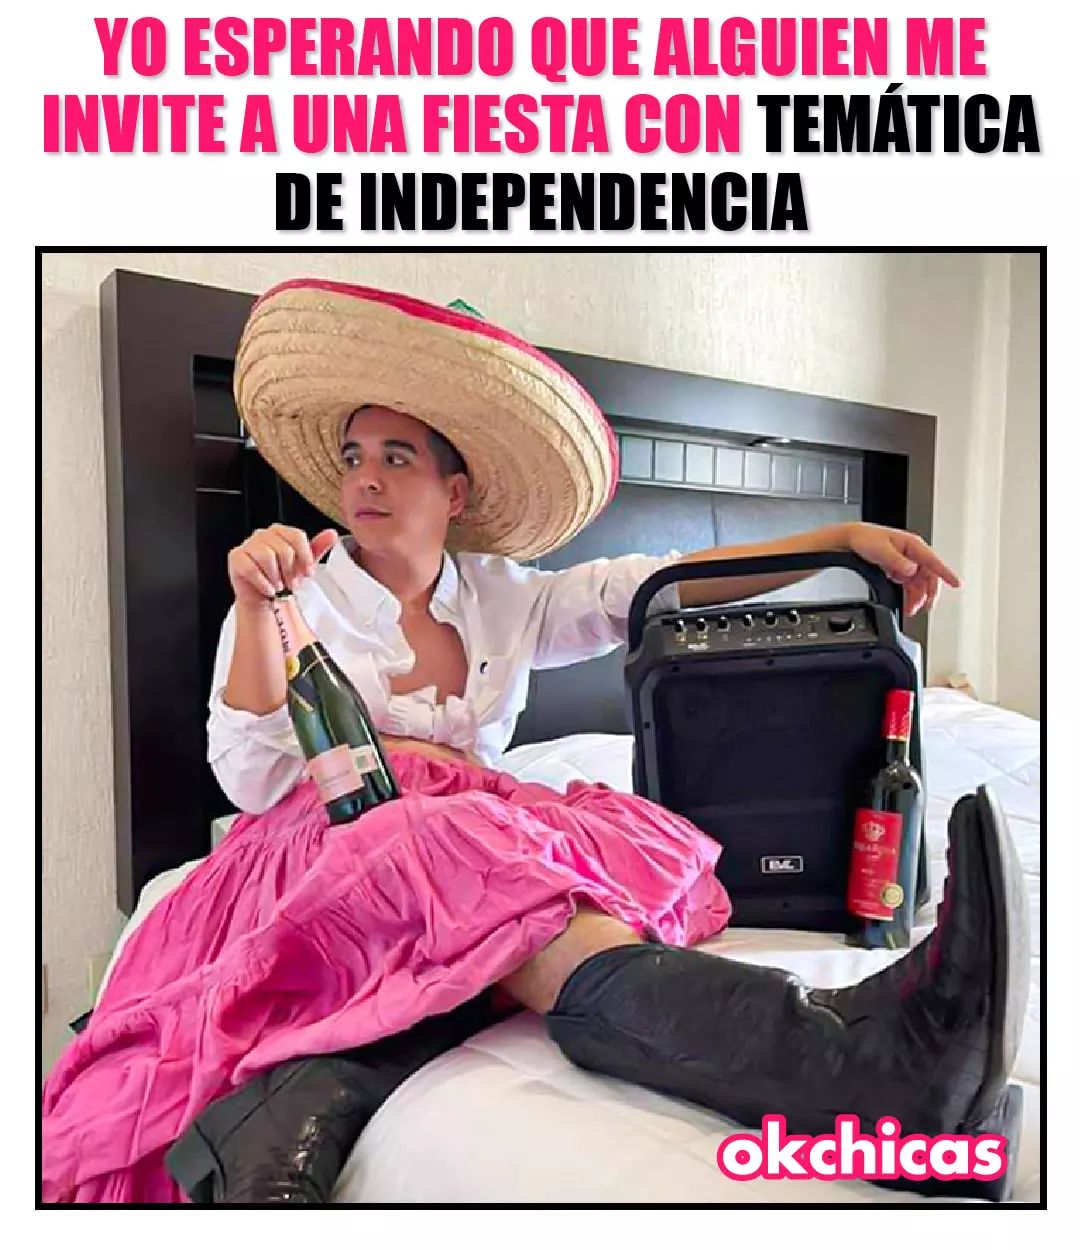 Yo esperando que alguien me invite a una fiesta con temática de independencia.